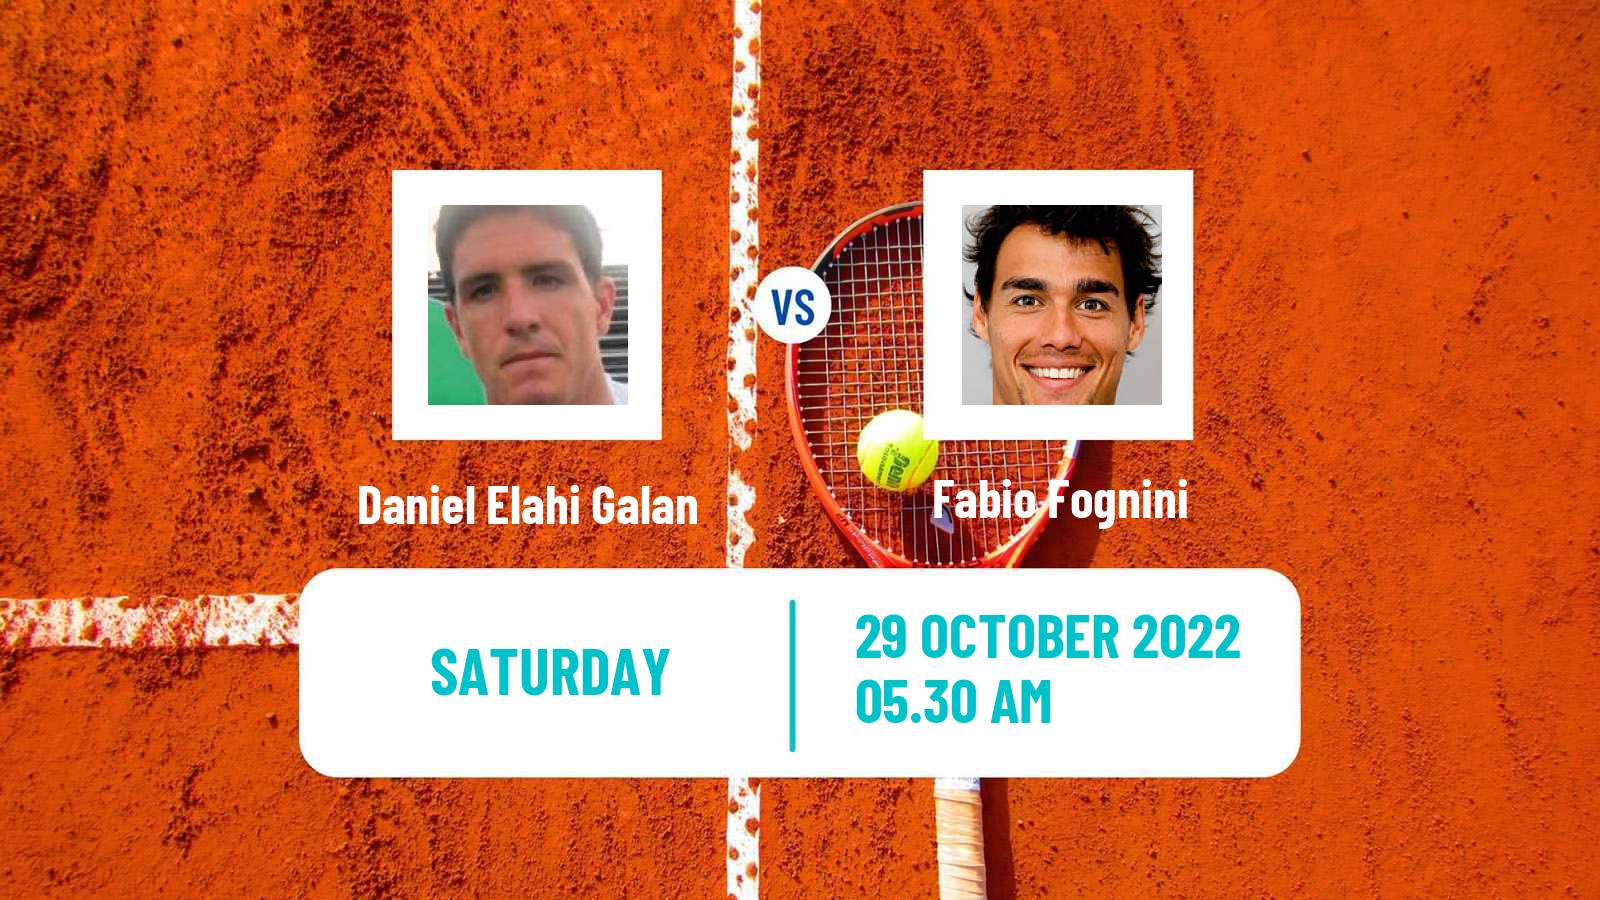 Tennis ATP Paris Daniel Elahi Galan - Fabio Fognini